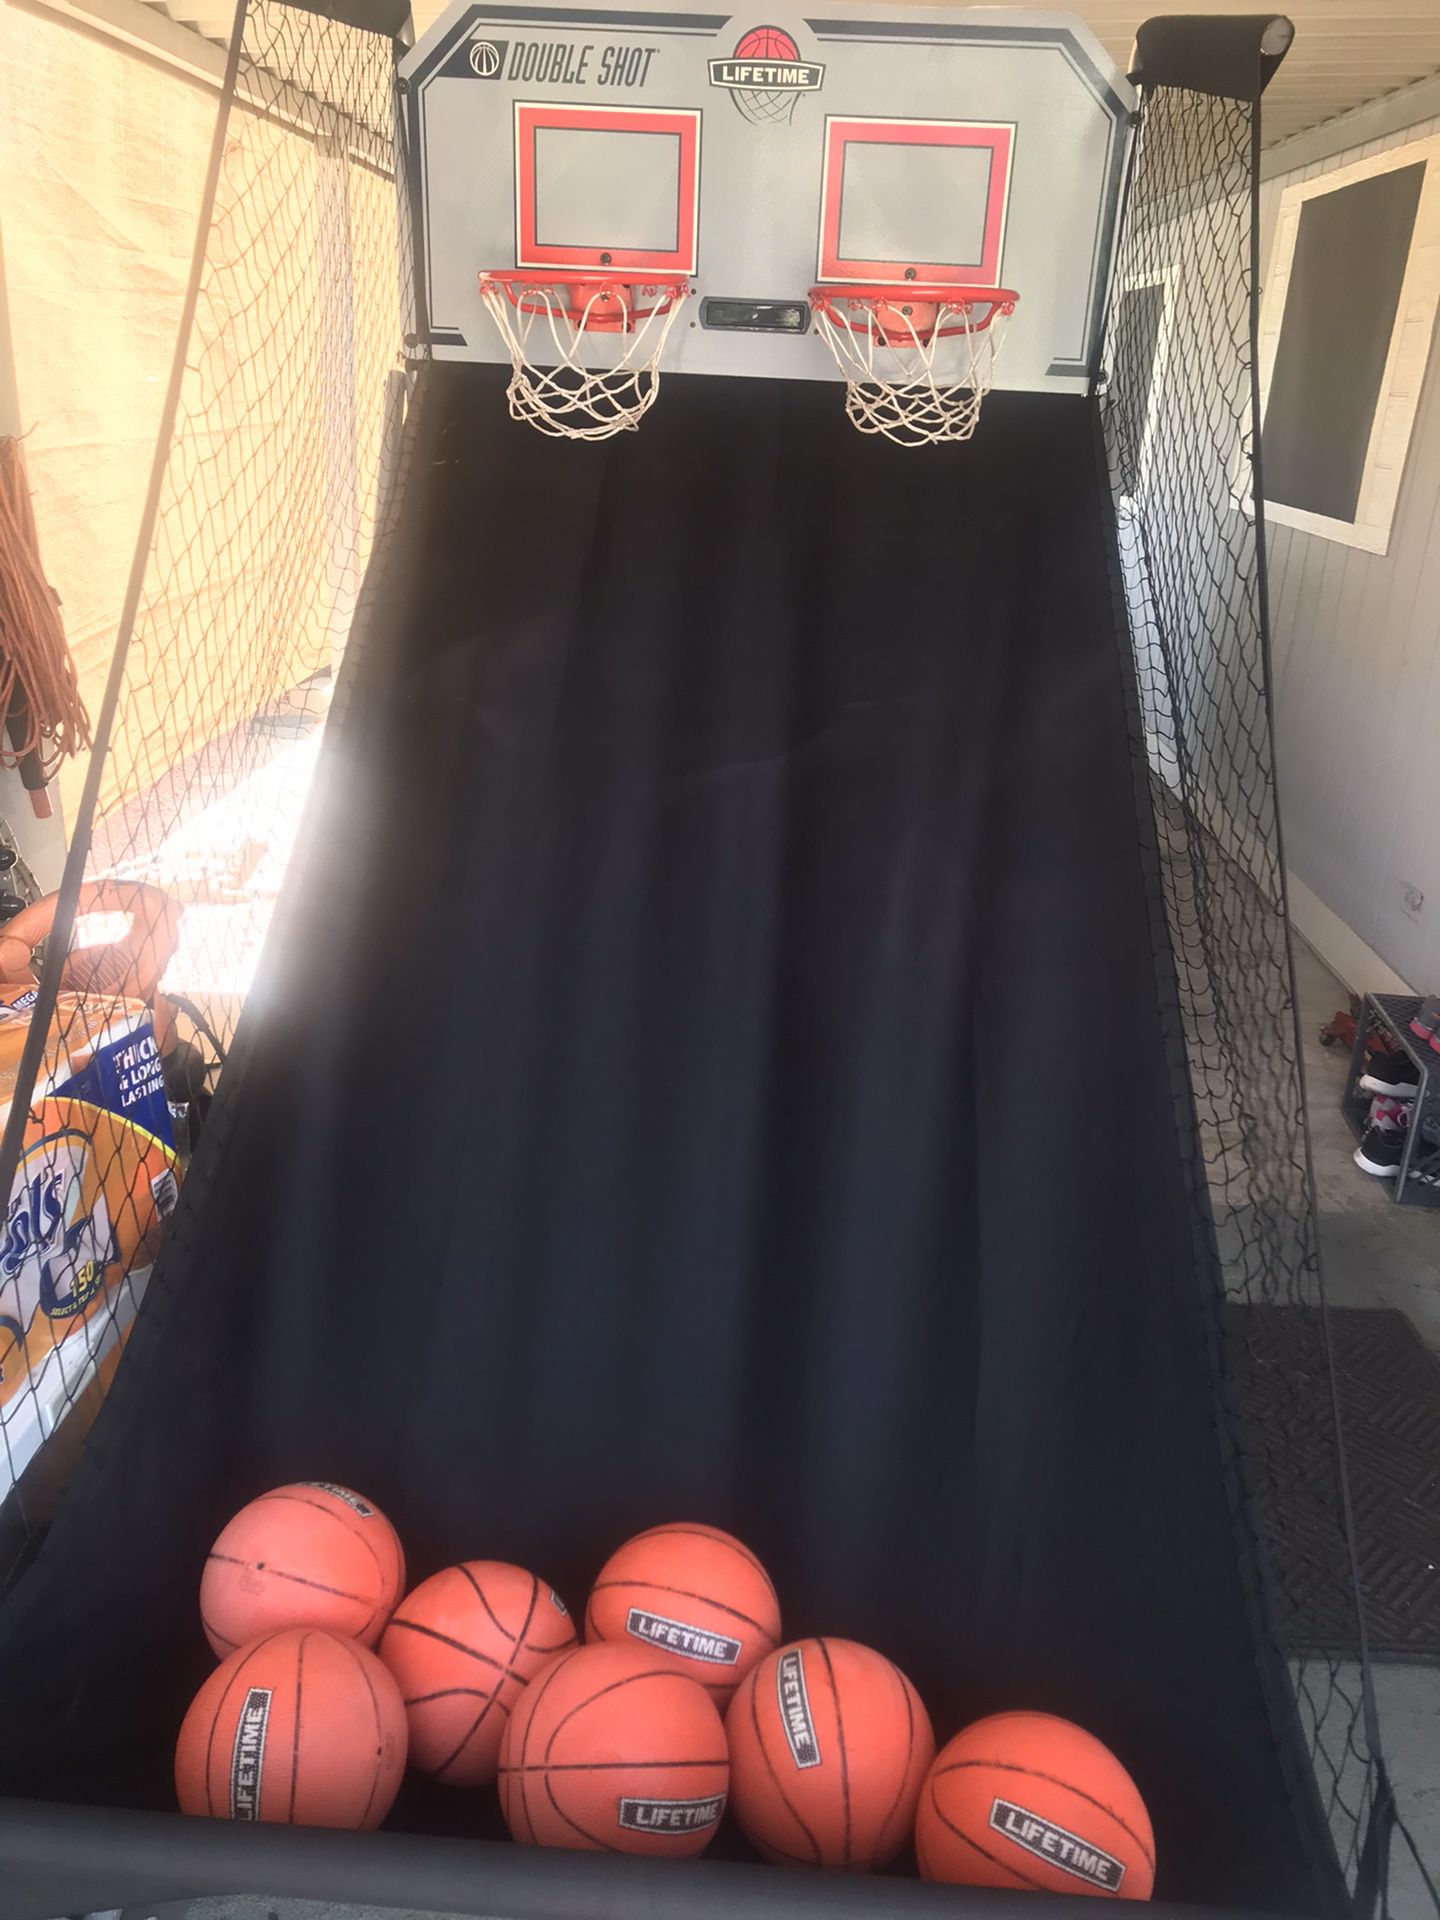 Double shot basketball hoop